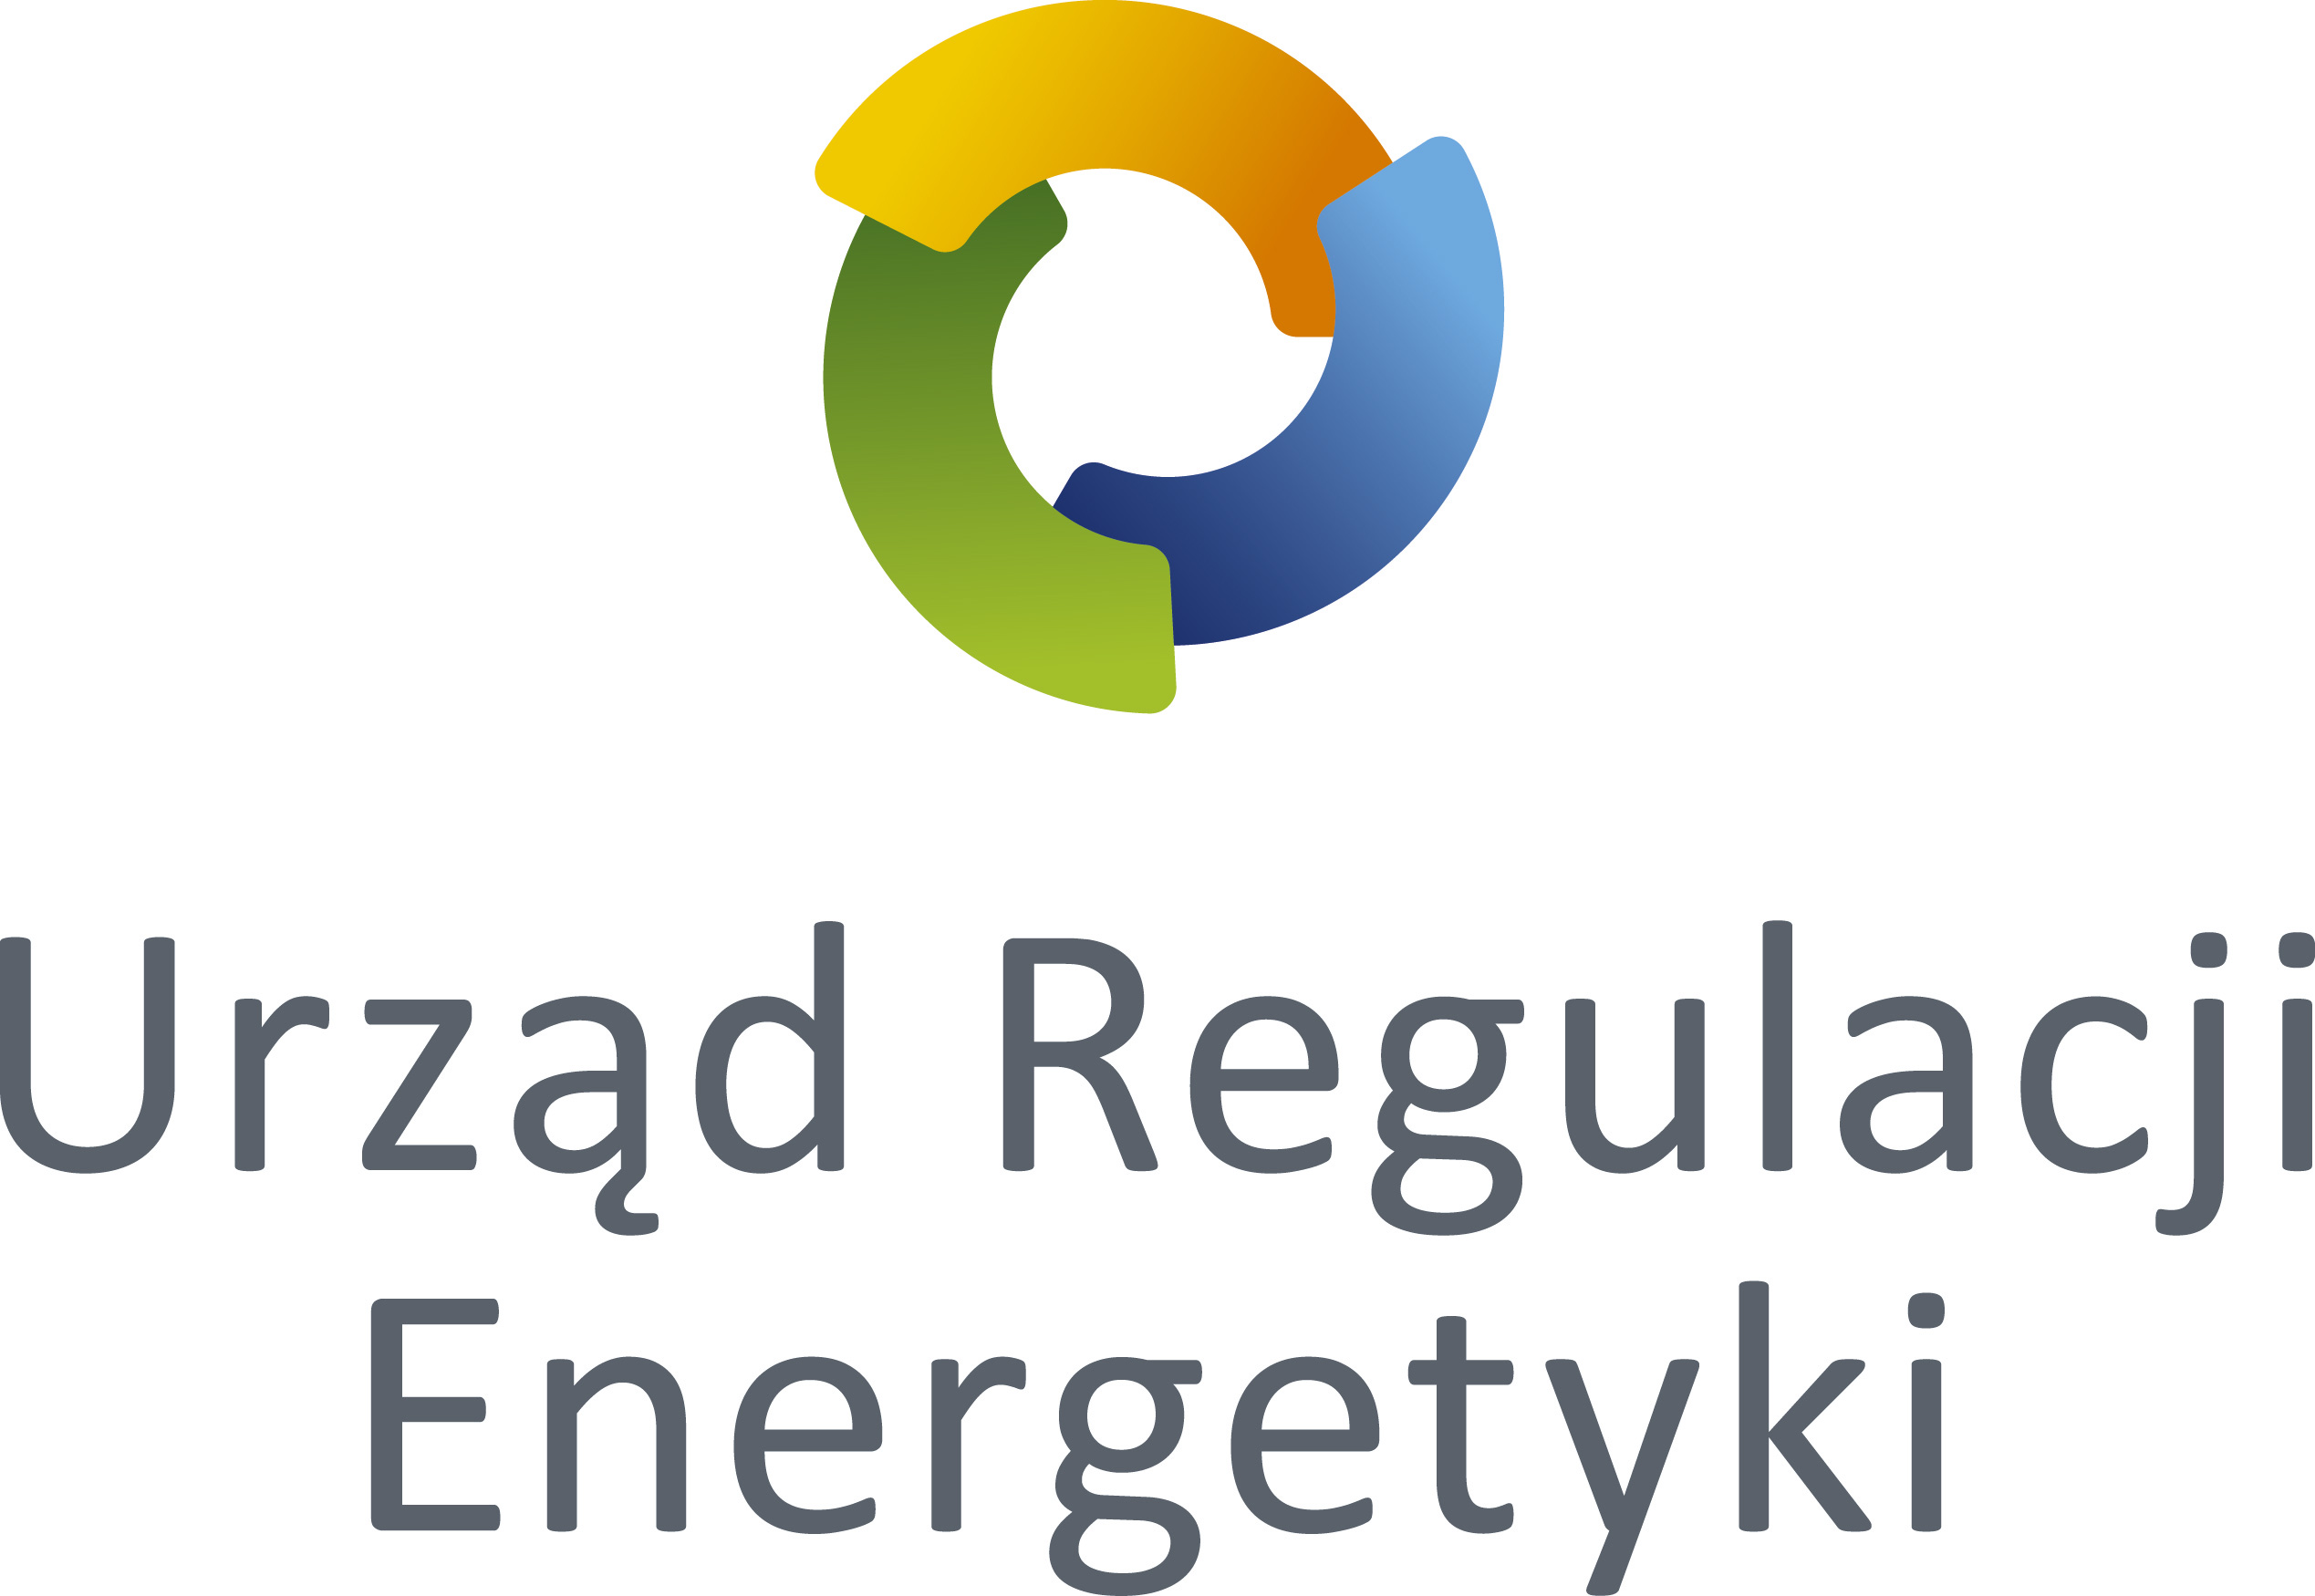 Urząd Regulacji Energetyki infolinia | Kontakt, telefon, numer, adres, dane kontaktowe